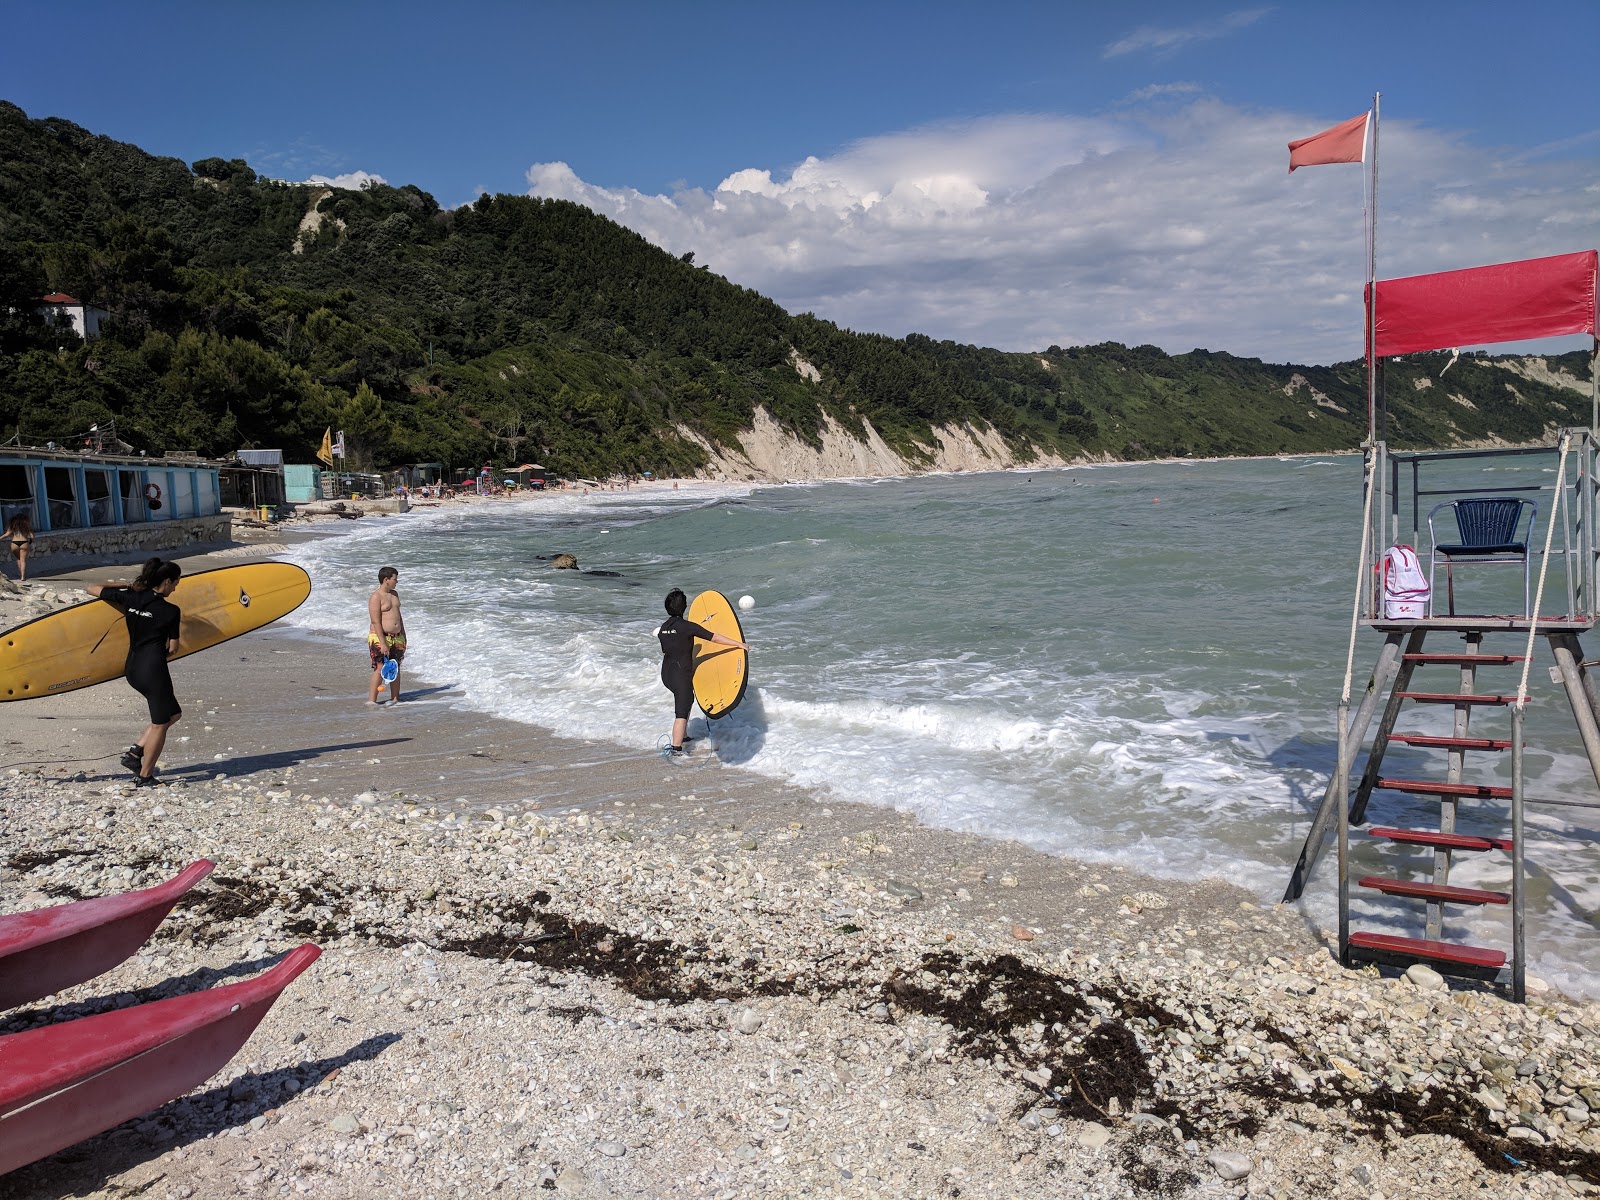 Foto de Spiaggia di Portonovo - lugar popular entre los conocedores del relax